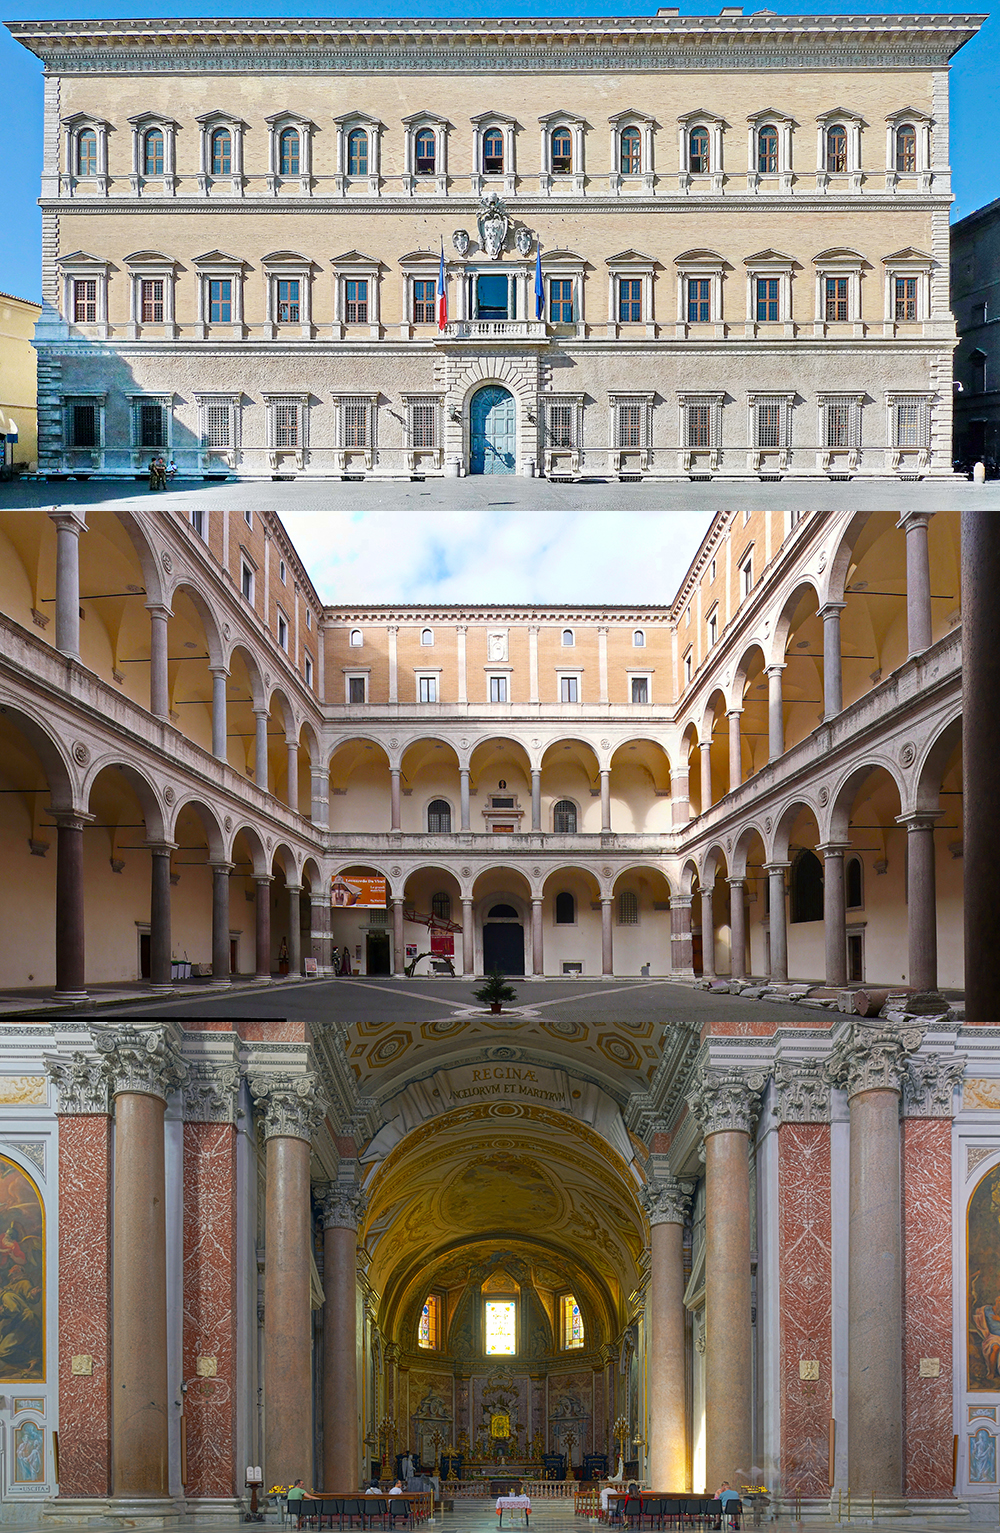 Design inspirations for the Pension Building, from top: Palazzo Farnese (1589, Michelangelo); Palazzo della Cancelleria (1489–1513, architect unknown); Santa Maria degli Angeli church (16th century, Michelangelo).